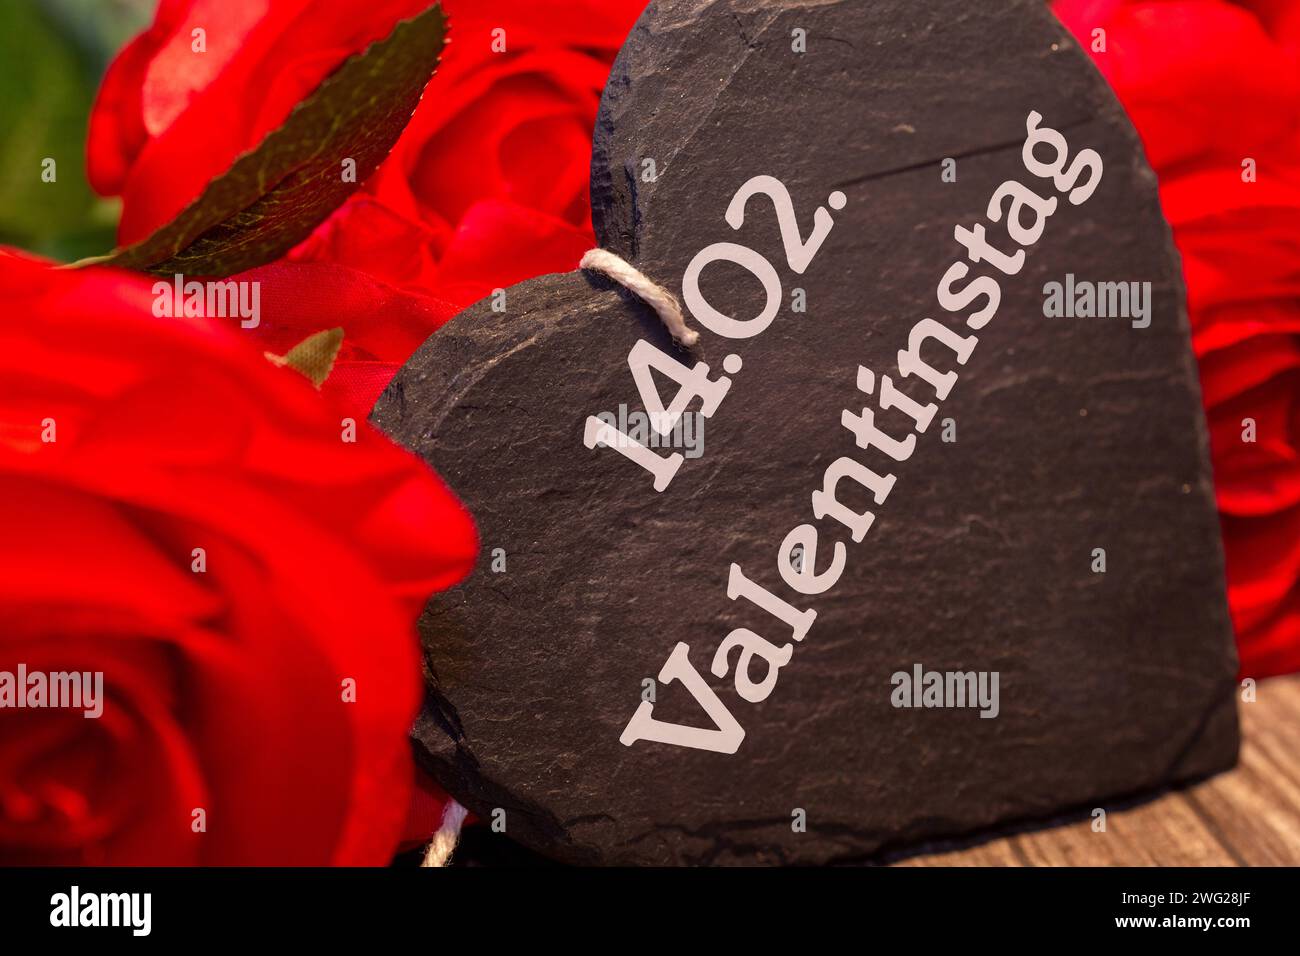 Erinnerung zum Valentinstag : Rosen und ein Herz mit der Aufschrift 14.02. VALENTINSTAG *** Rappel pour Saint Valentin Roses et un coeur avec l'inscription 14 02 SAINT VALENTIN Copyright : xx Banque D'Images